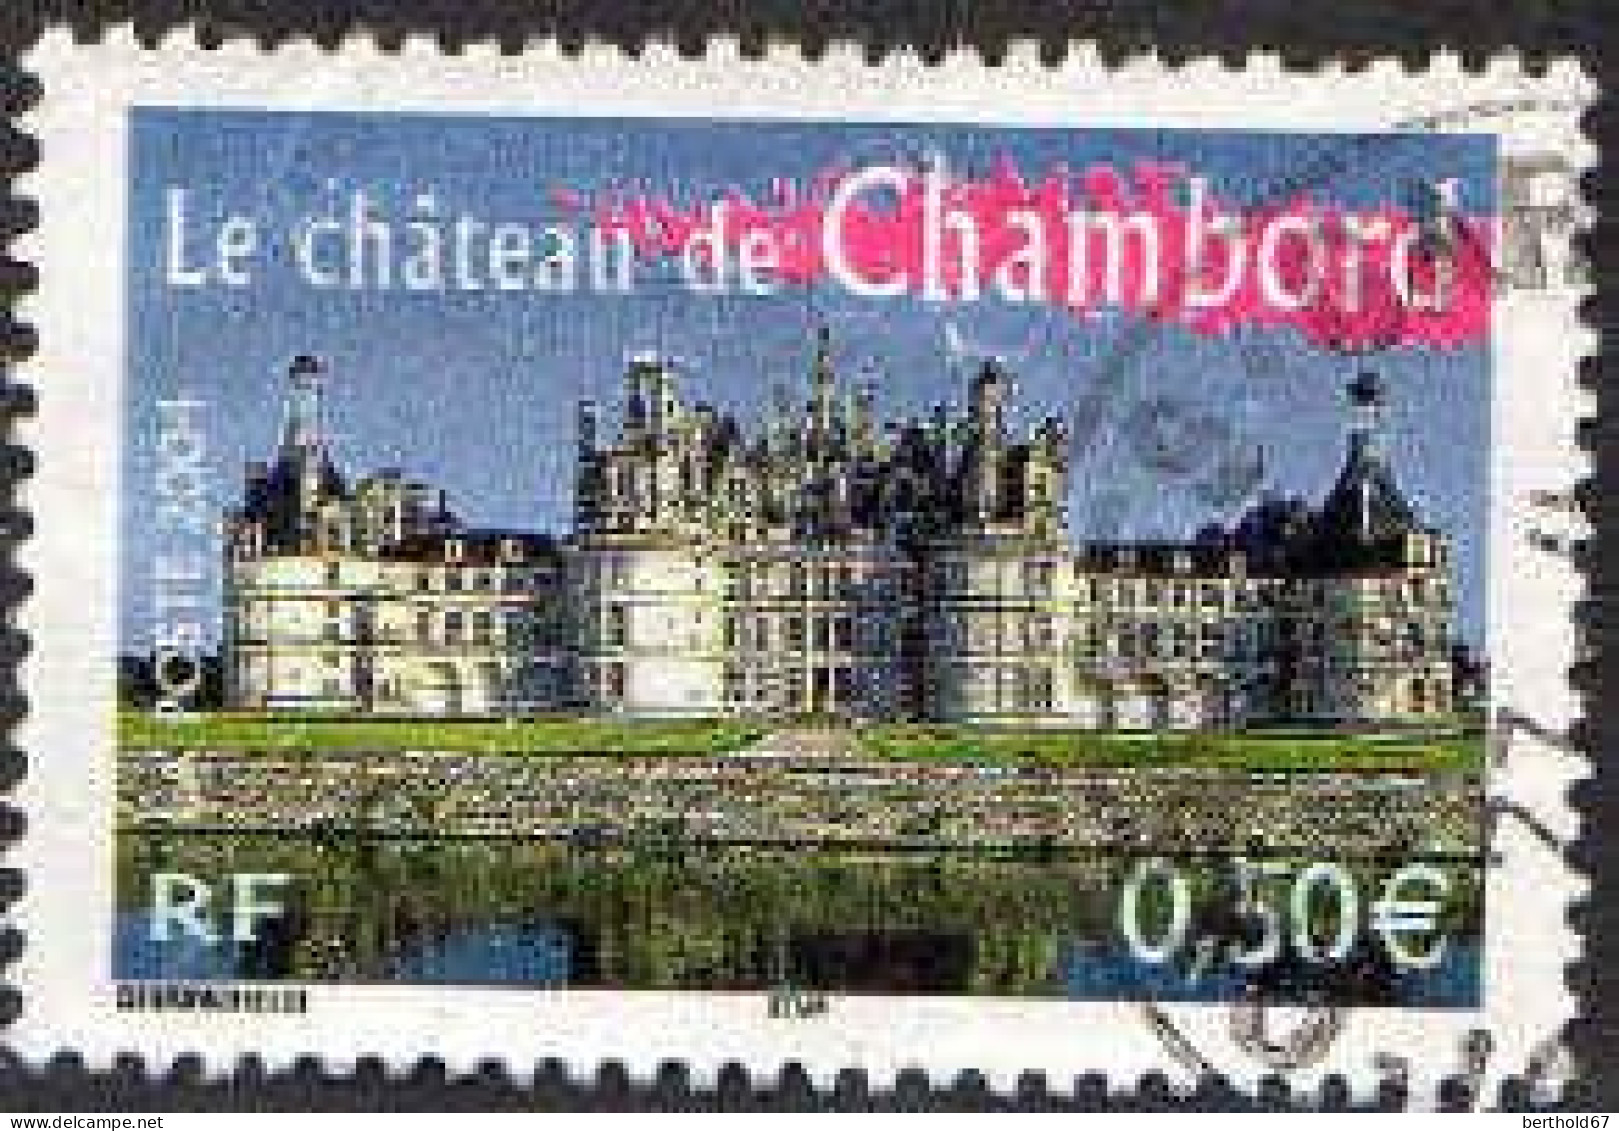 France Poste Obl Yv:3703 Le Château De Chambord (beau Cachet Rond) - Gebraucht